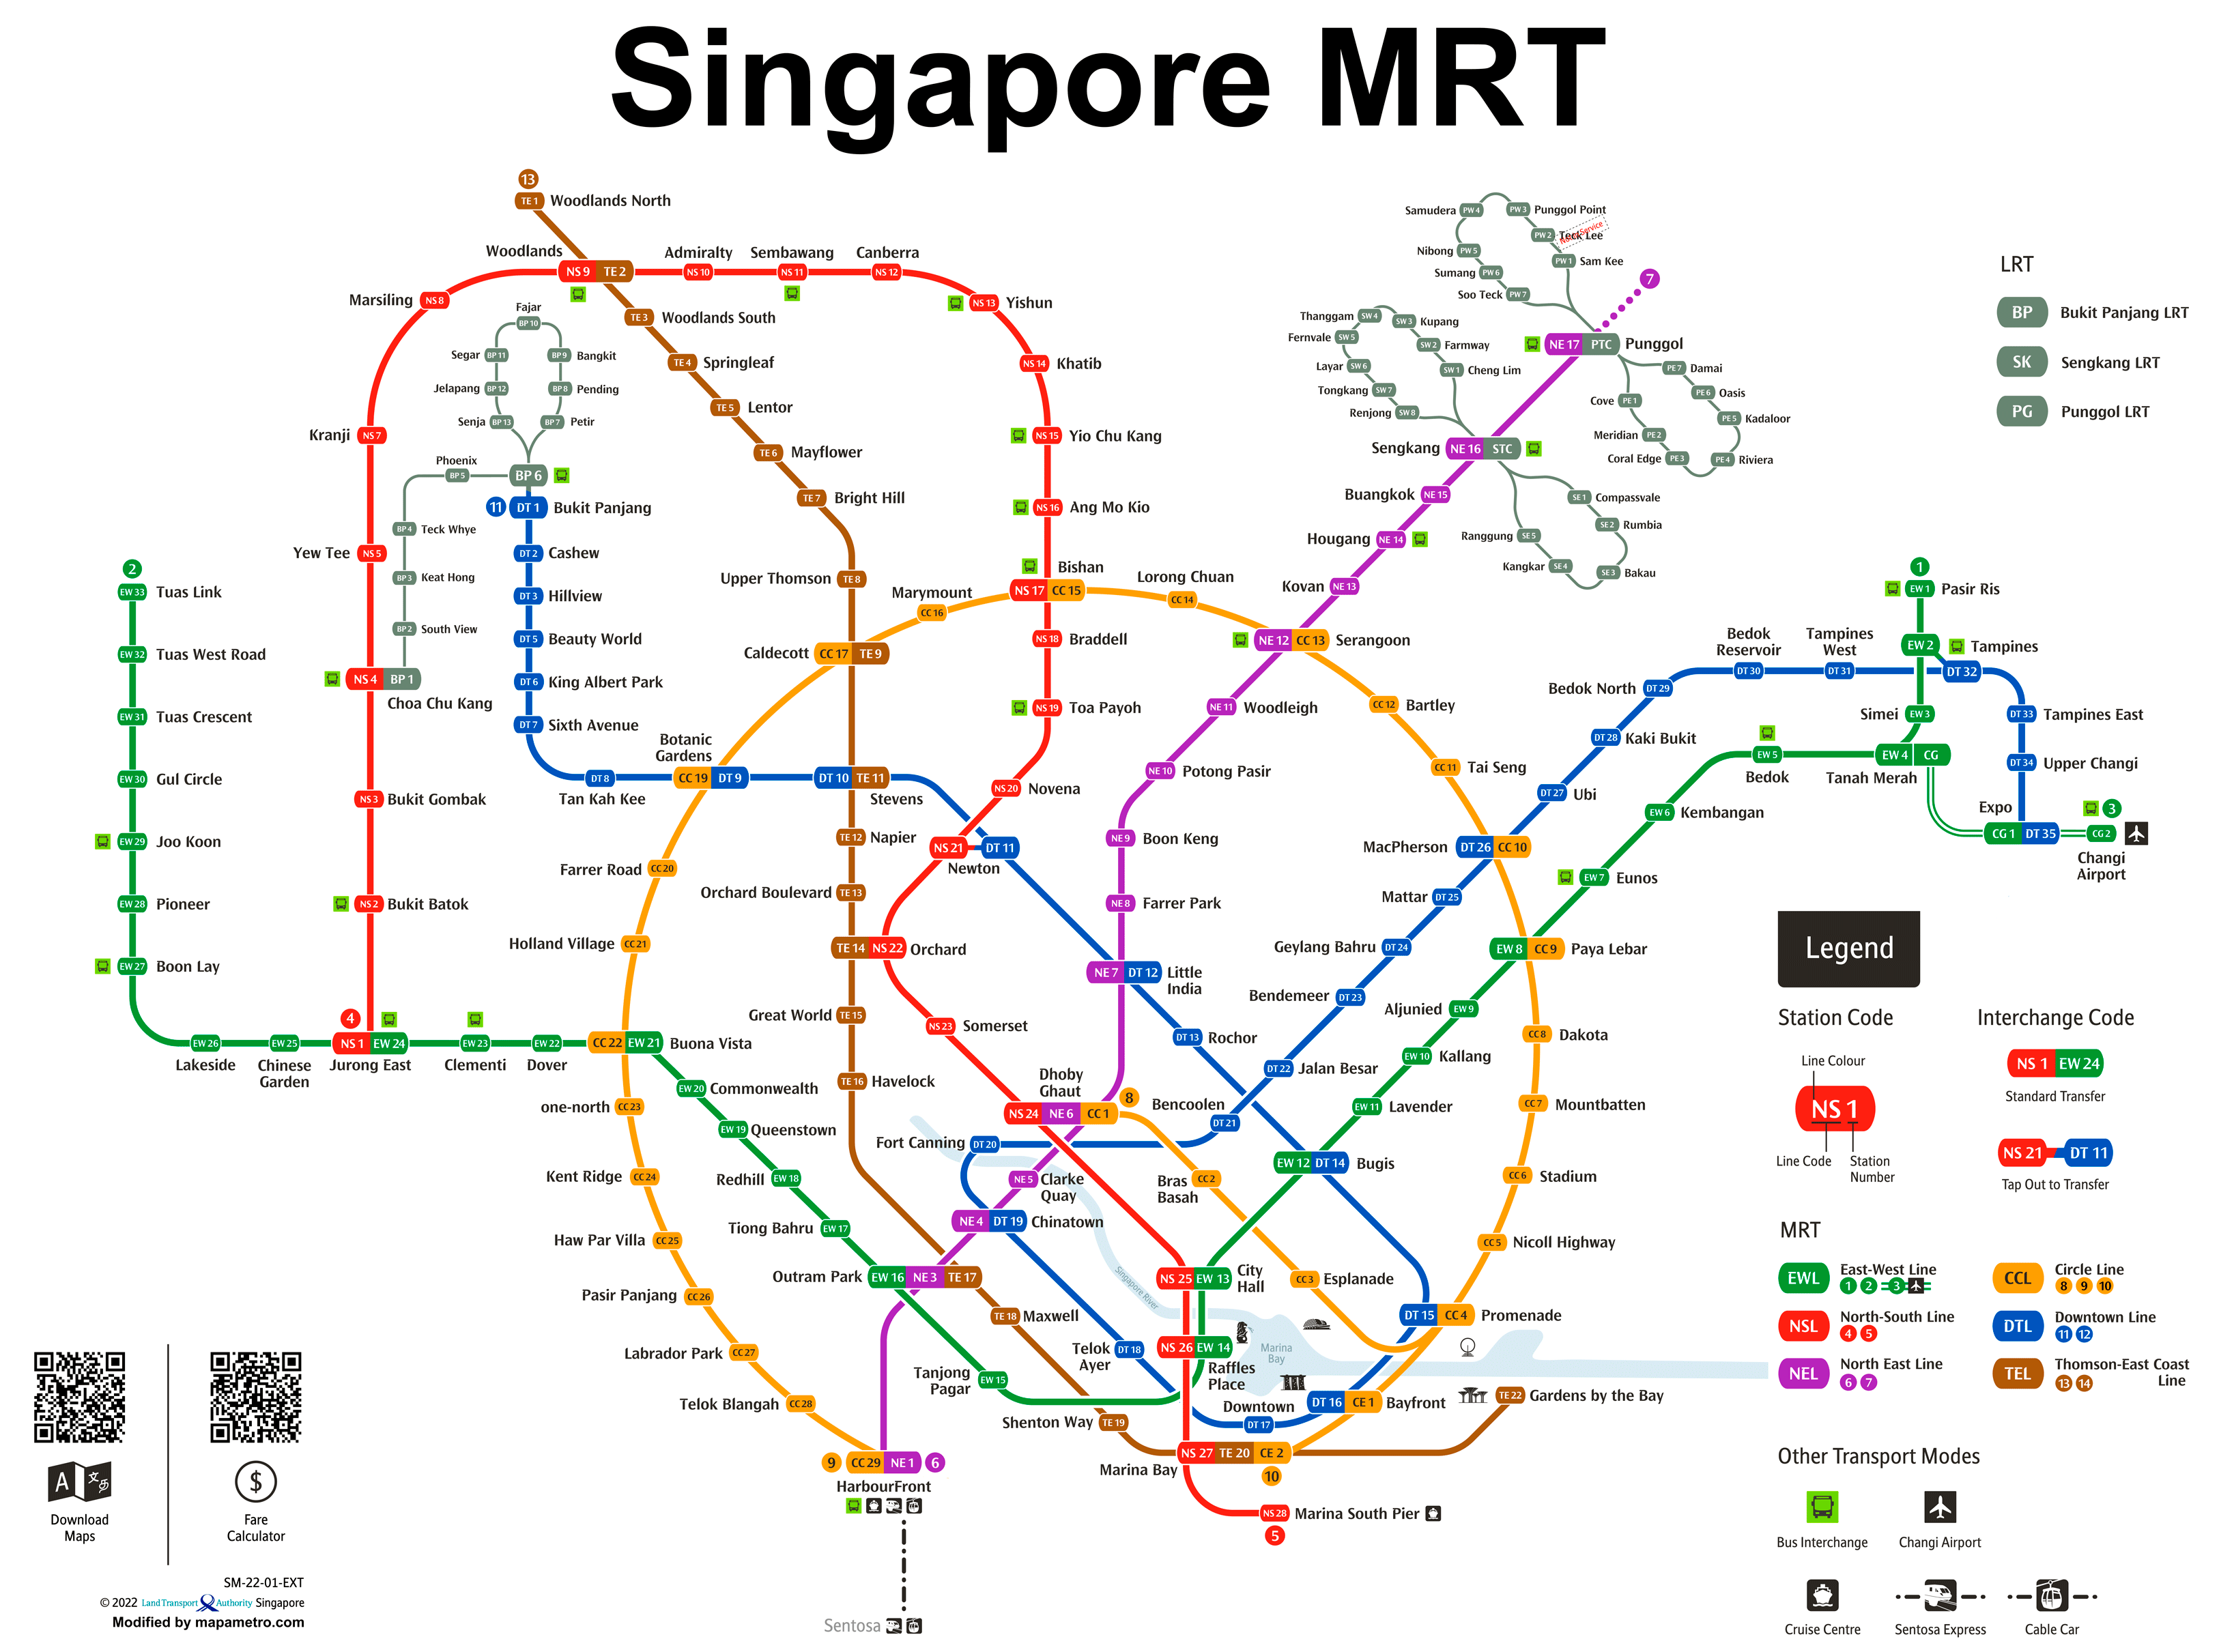 シンガポールMRT地下鉄路線図